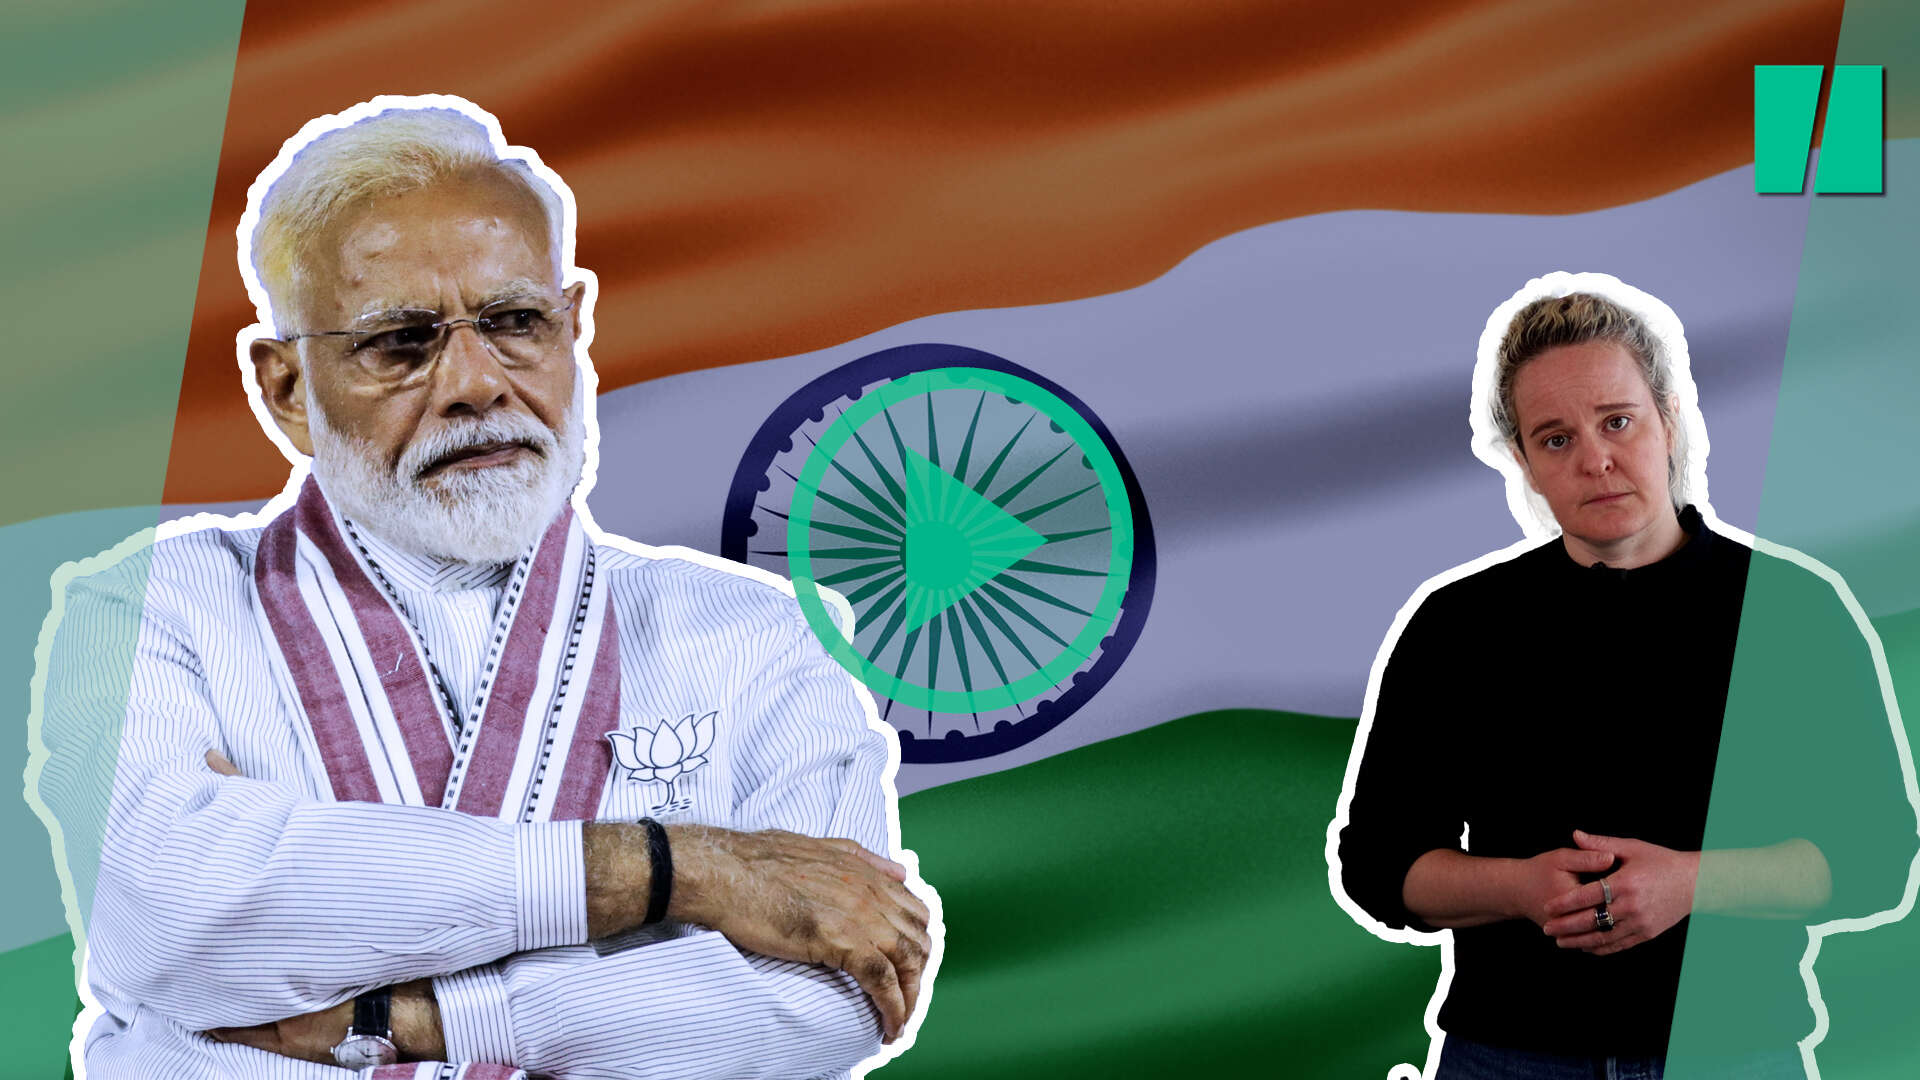 narendra modi : en inde, des élections qui pourraient finir de faire basculer complètement le pays